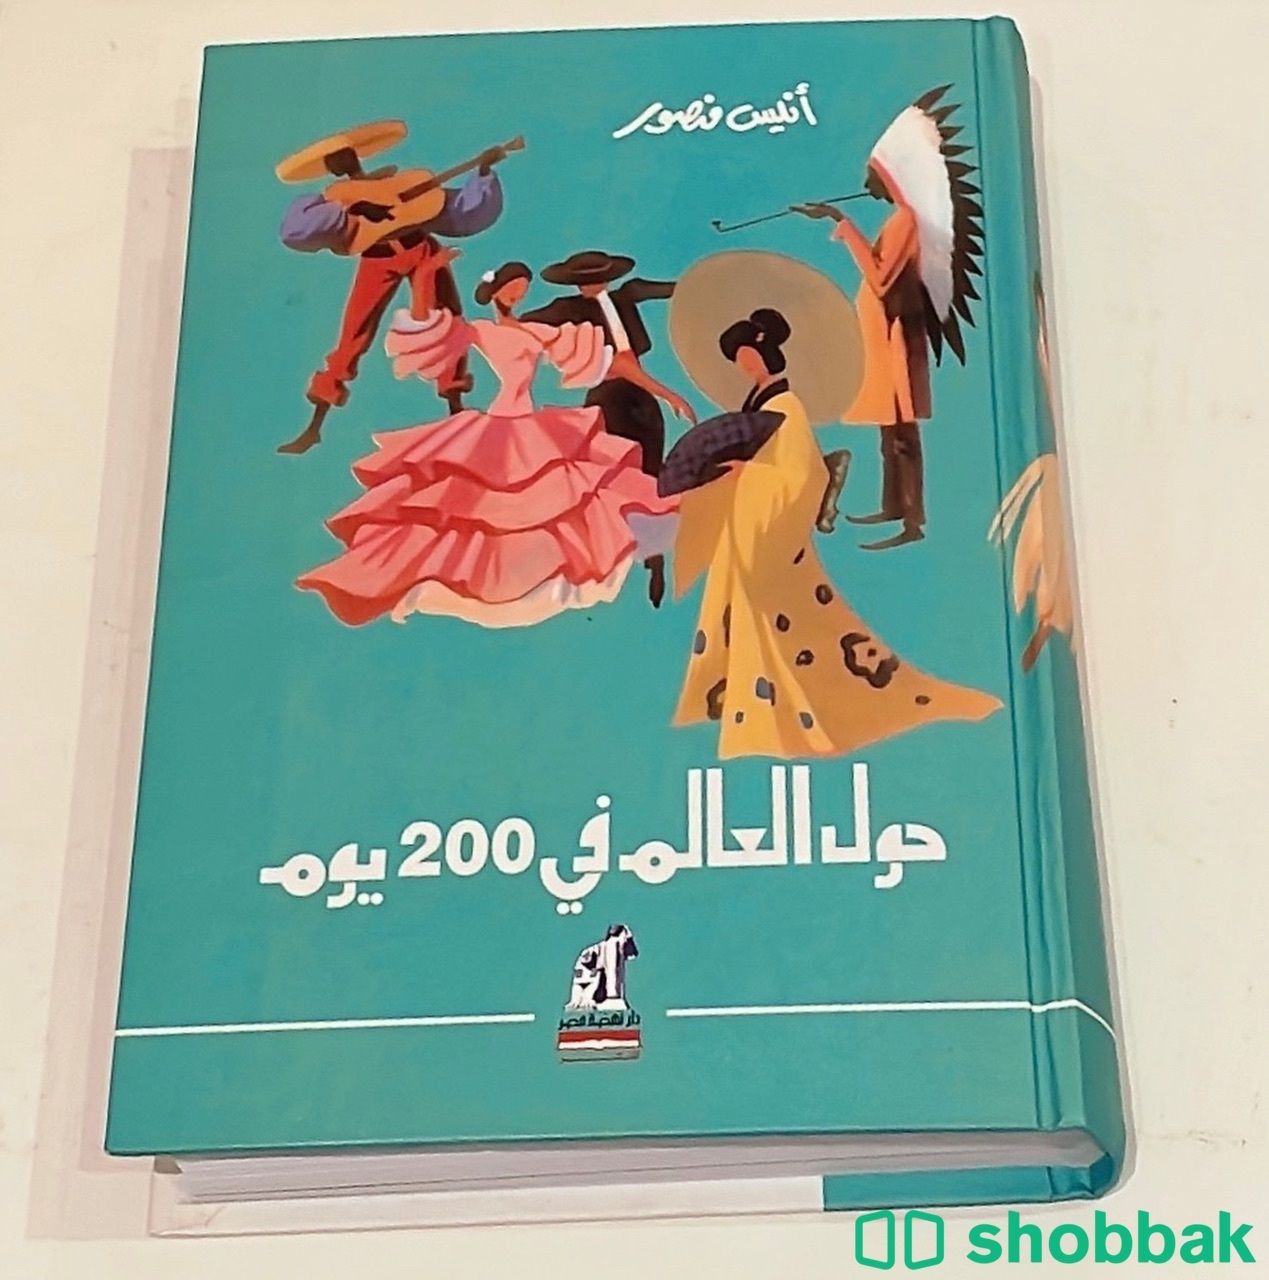 حول العالم في 200 يوم - أنيس منصور.  Shobbak Saudi Arabia